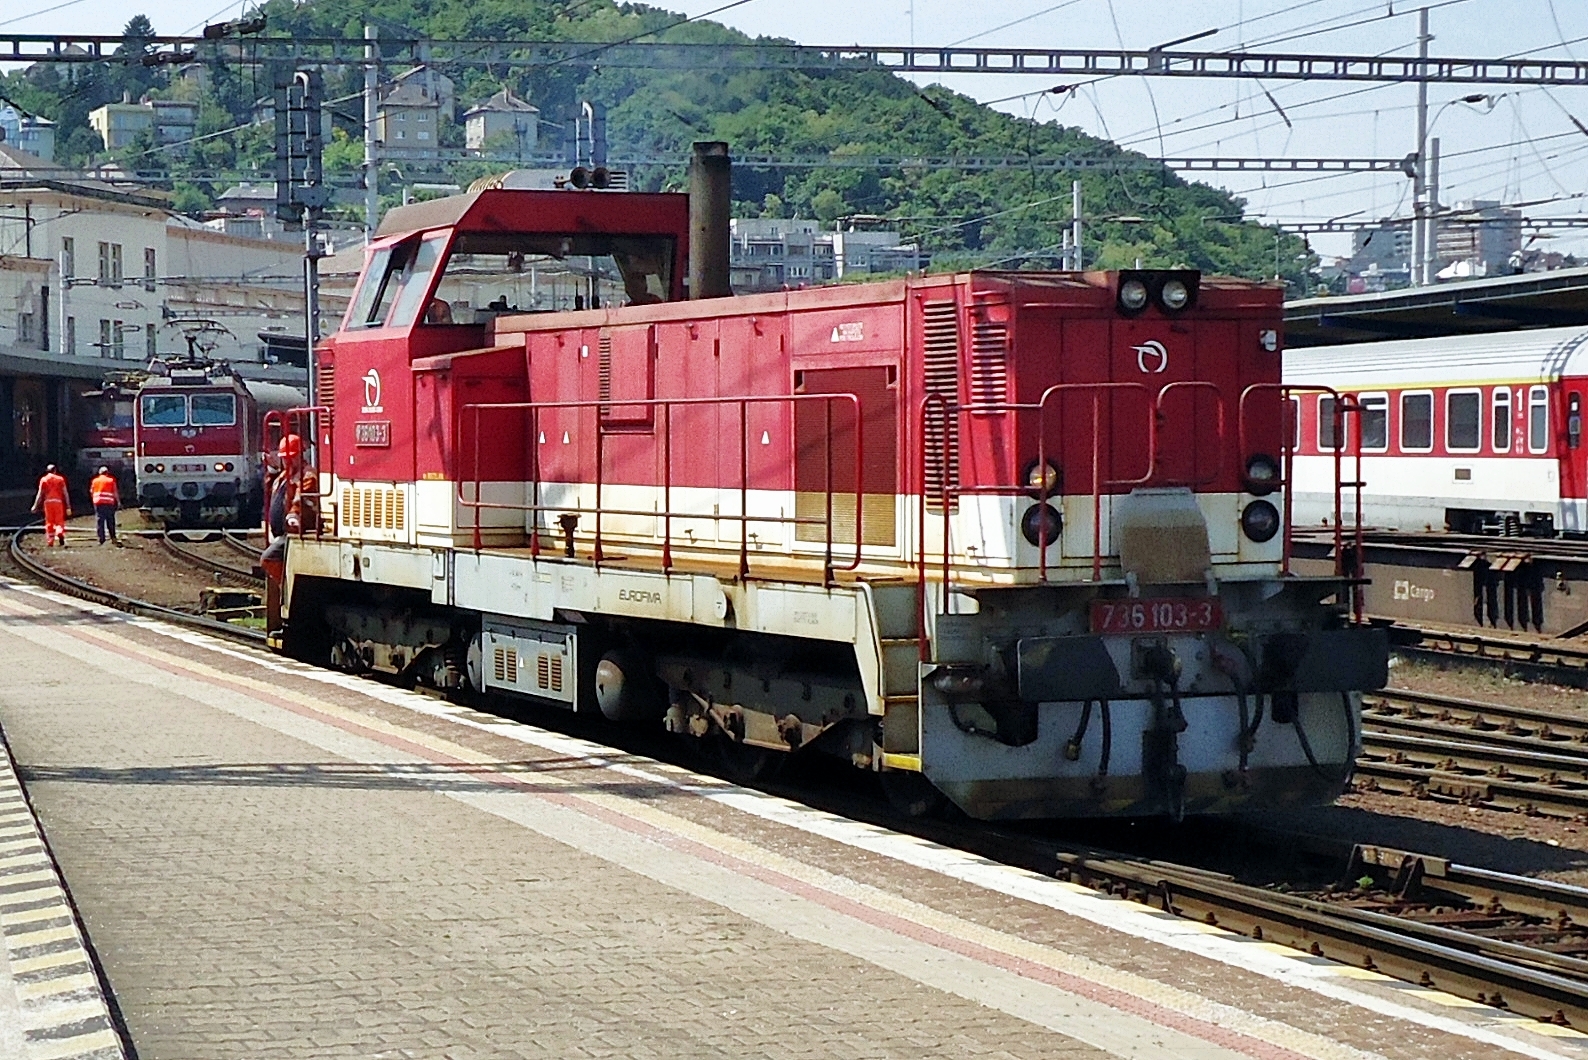 ZSSK 736 103 lauft am 12 September 2018 um in Bratislava hl.st. Die Reihe 736 ist eine grundlegende Modernisierung von die Reihe 735 Pielstick, so genannt wegen der Fransösische Pielstick-Dieselmotor. Weil jedoch die 725 keine Glanzerfolg war, wurde von ZSSK entschlossen, die Reihe zu Modernisieren.